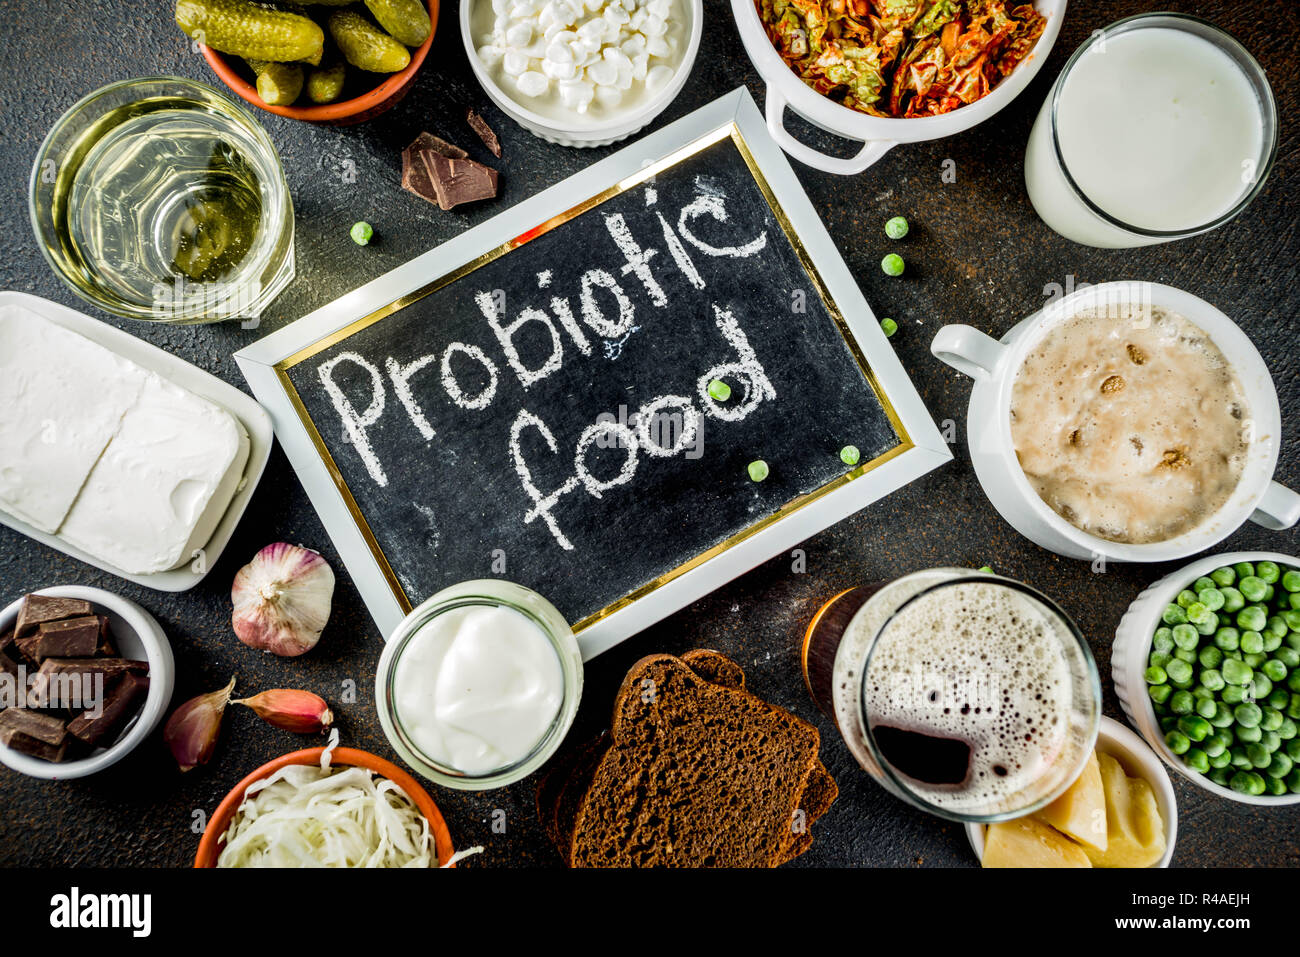 Super gesunden probiotischen fermentierter Lebensmittel, Getränke, Zutaten, auf dunklen konkreten Hintergrund Kopie Raum, Ansicht von oben Stockfoto